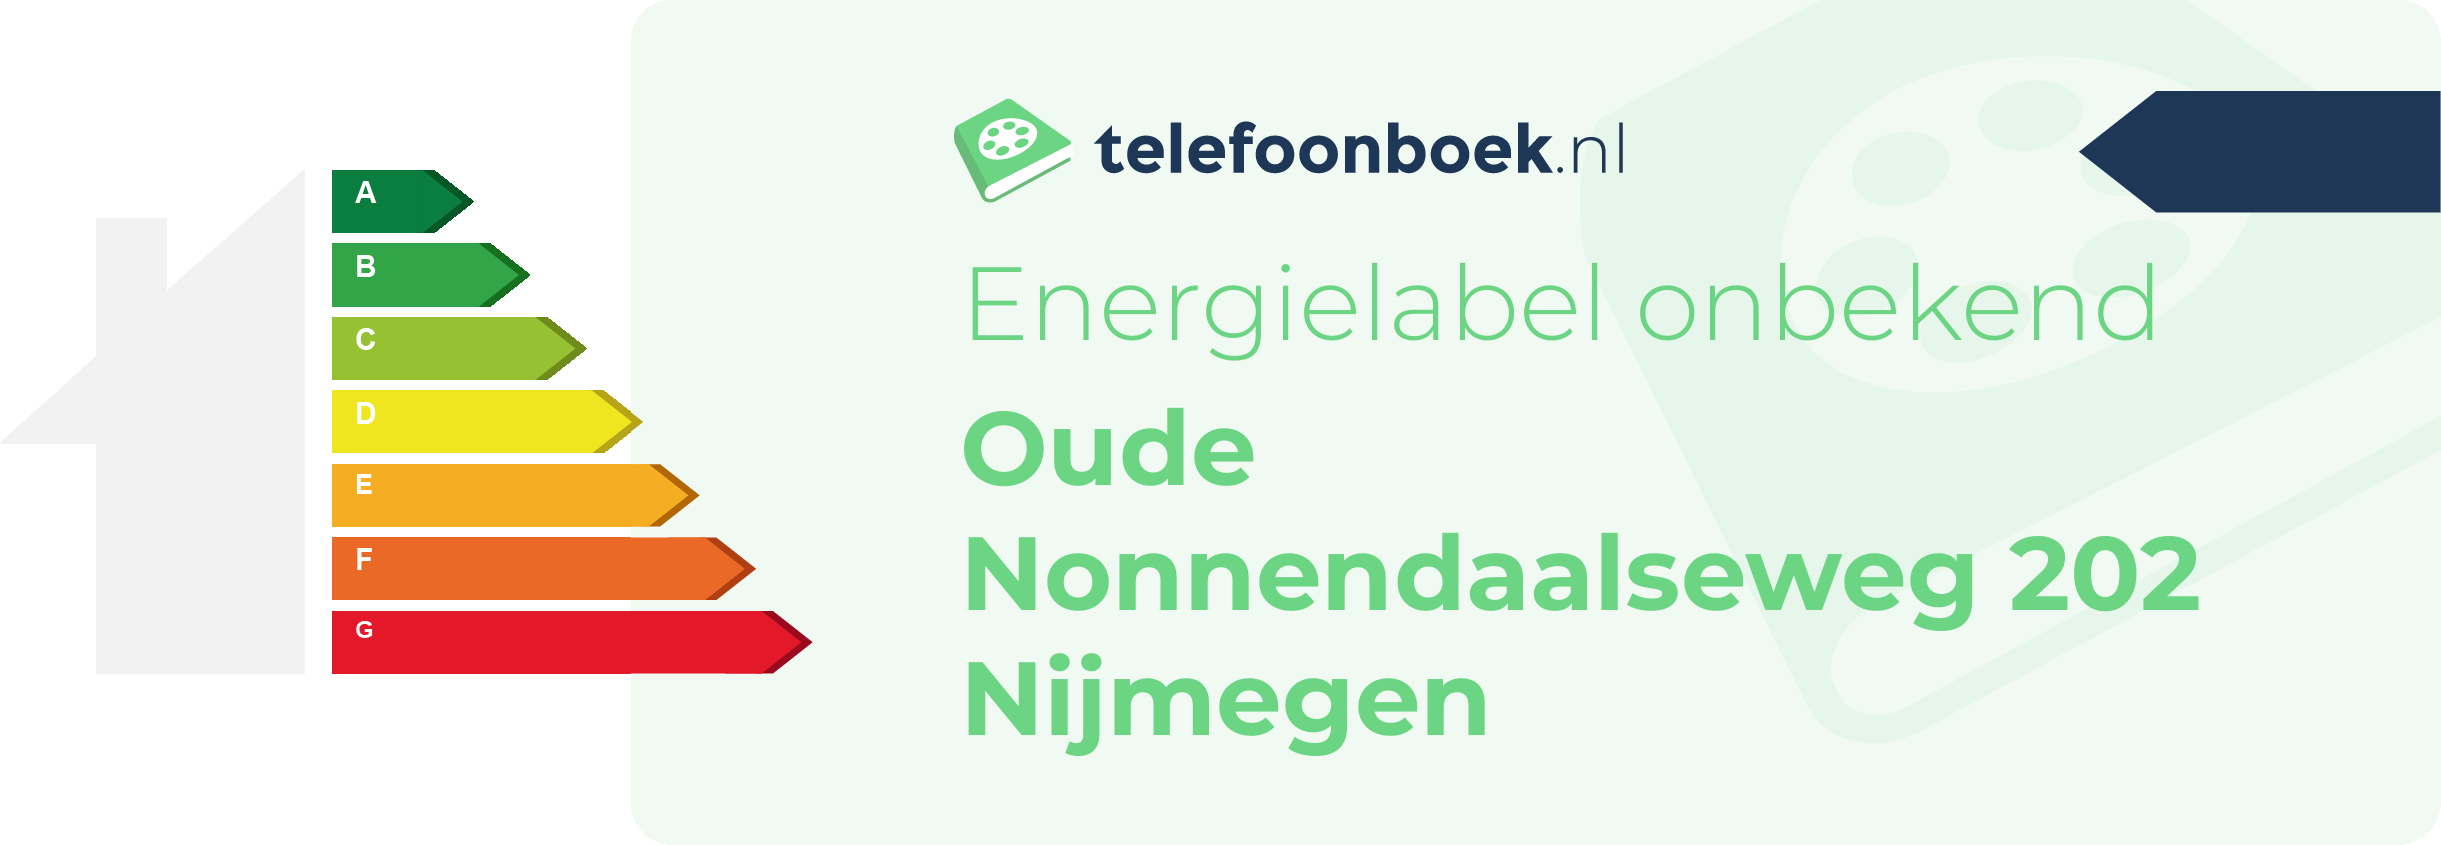 Energielabel Oude Nonnendaalseweg 202 Nijmegen